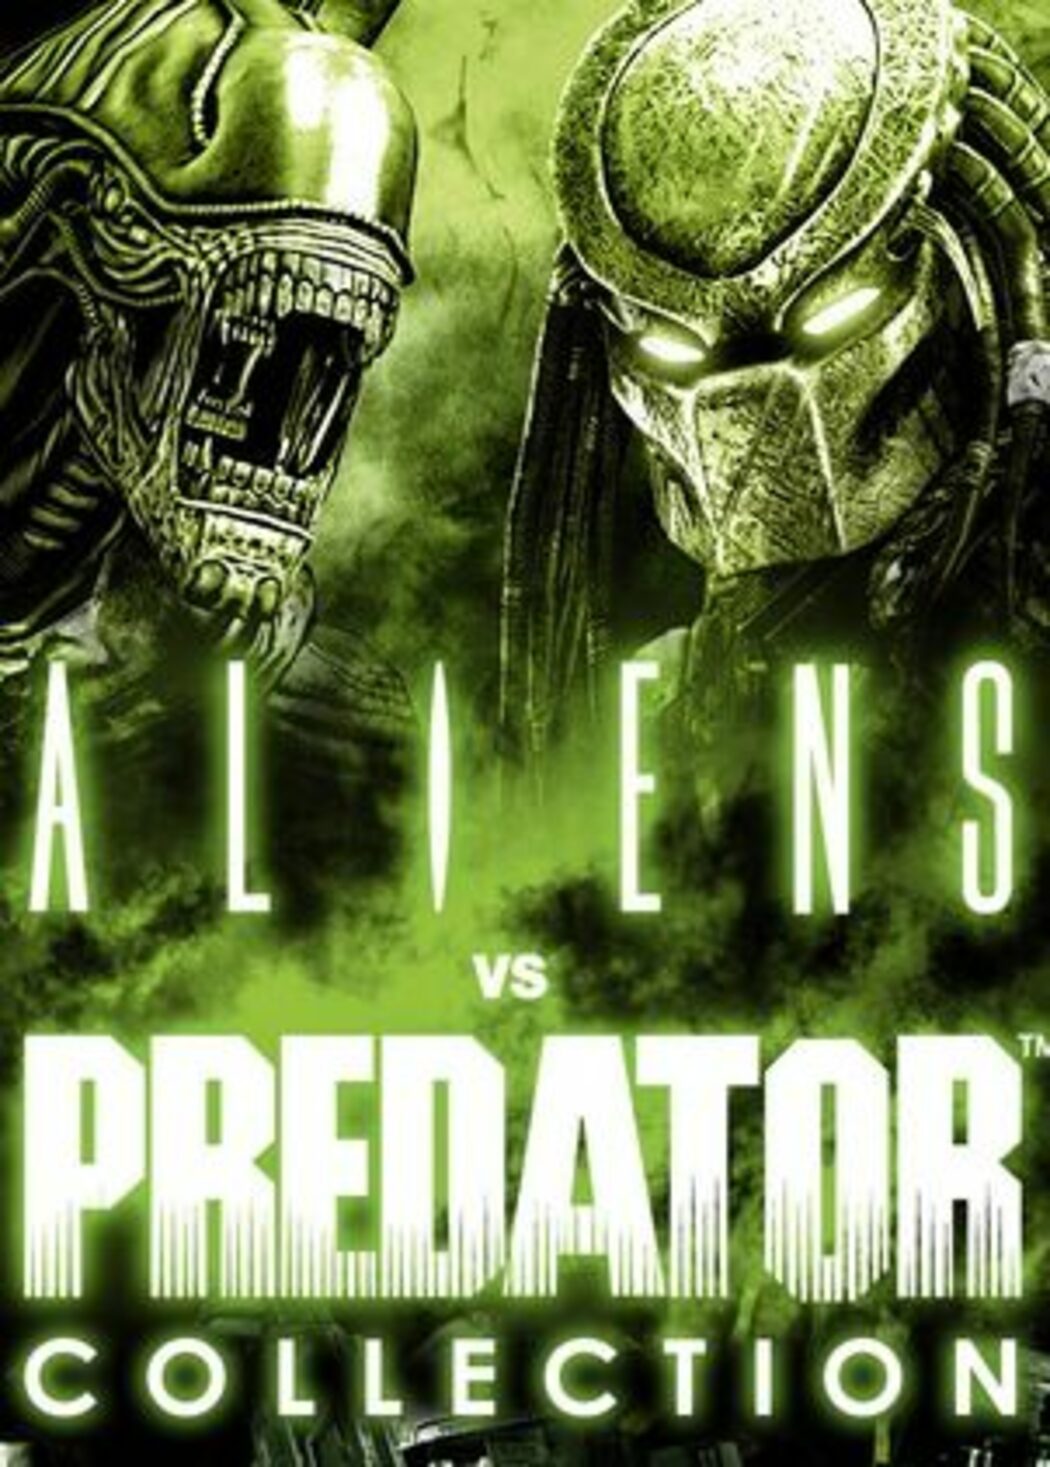 Aliens vs. Predator Xbox 360 Used